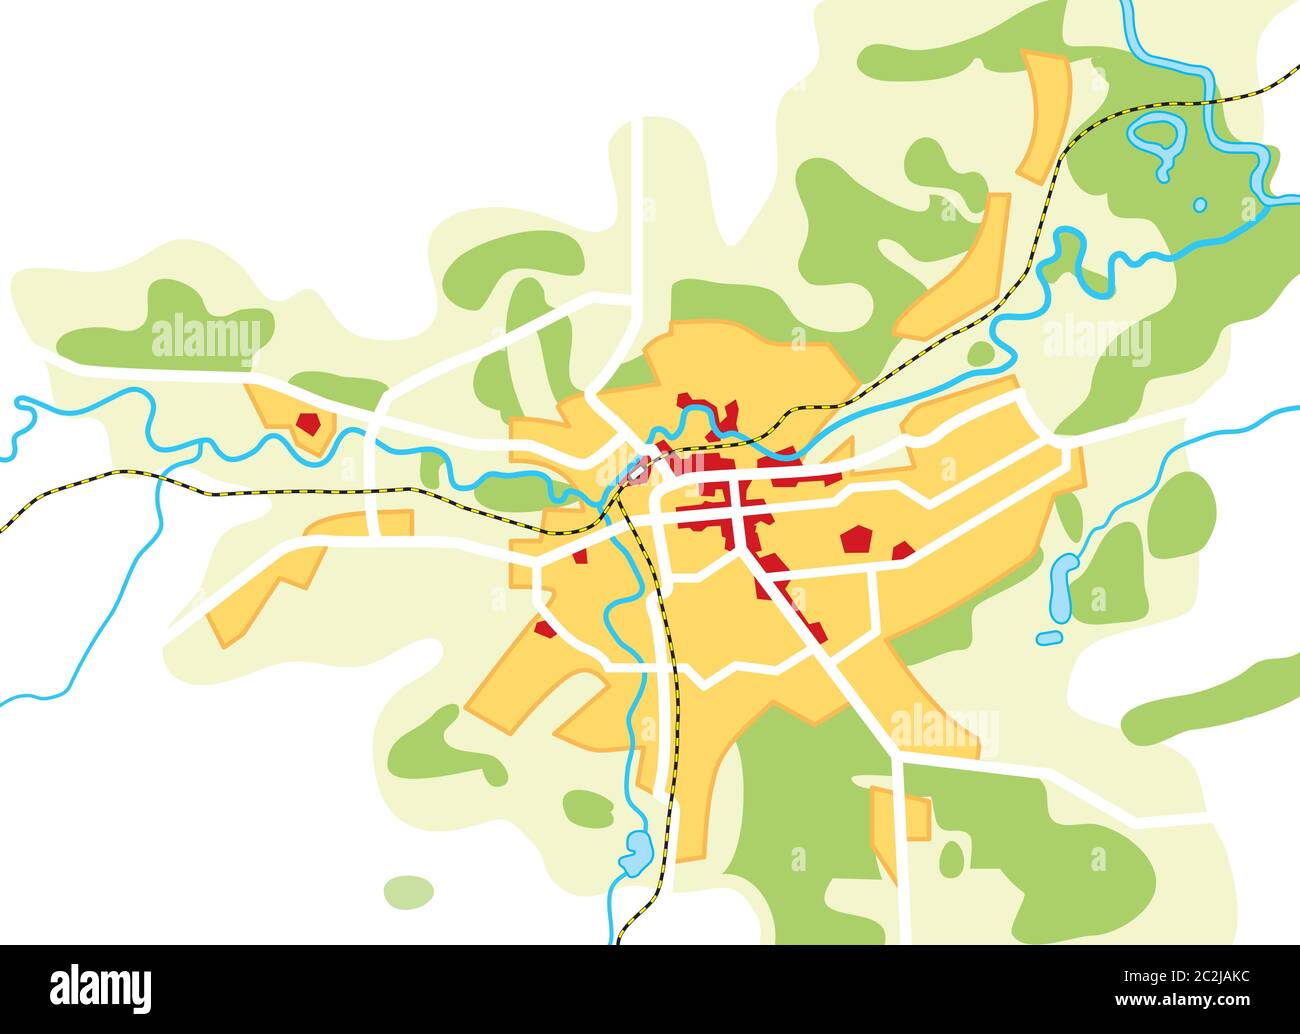 Mappa della citta'. Posizione geografica, navigazione guida turistica, percorso grafico urbano. Foto Stock